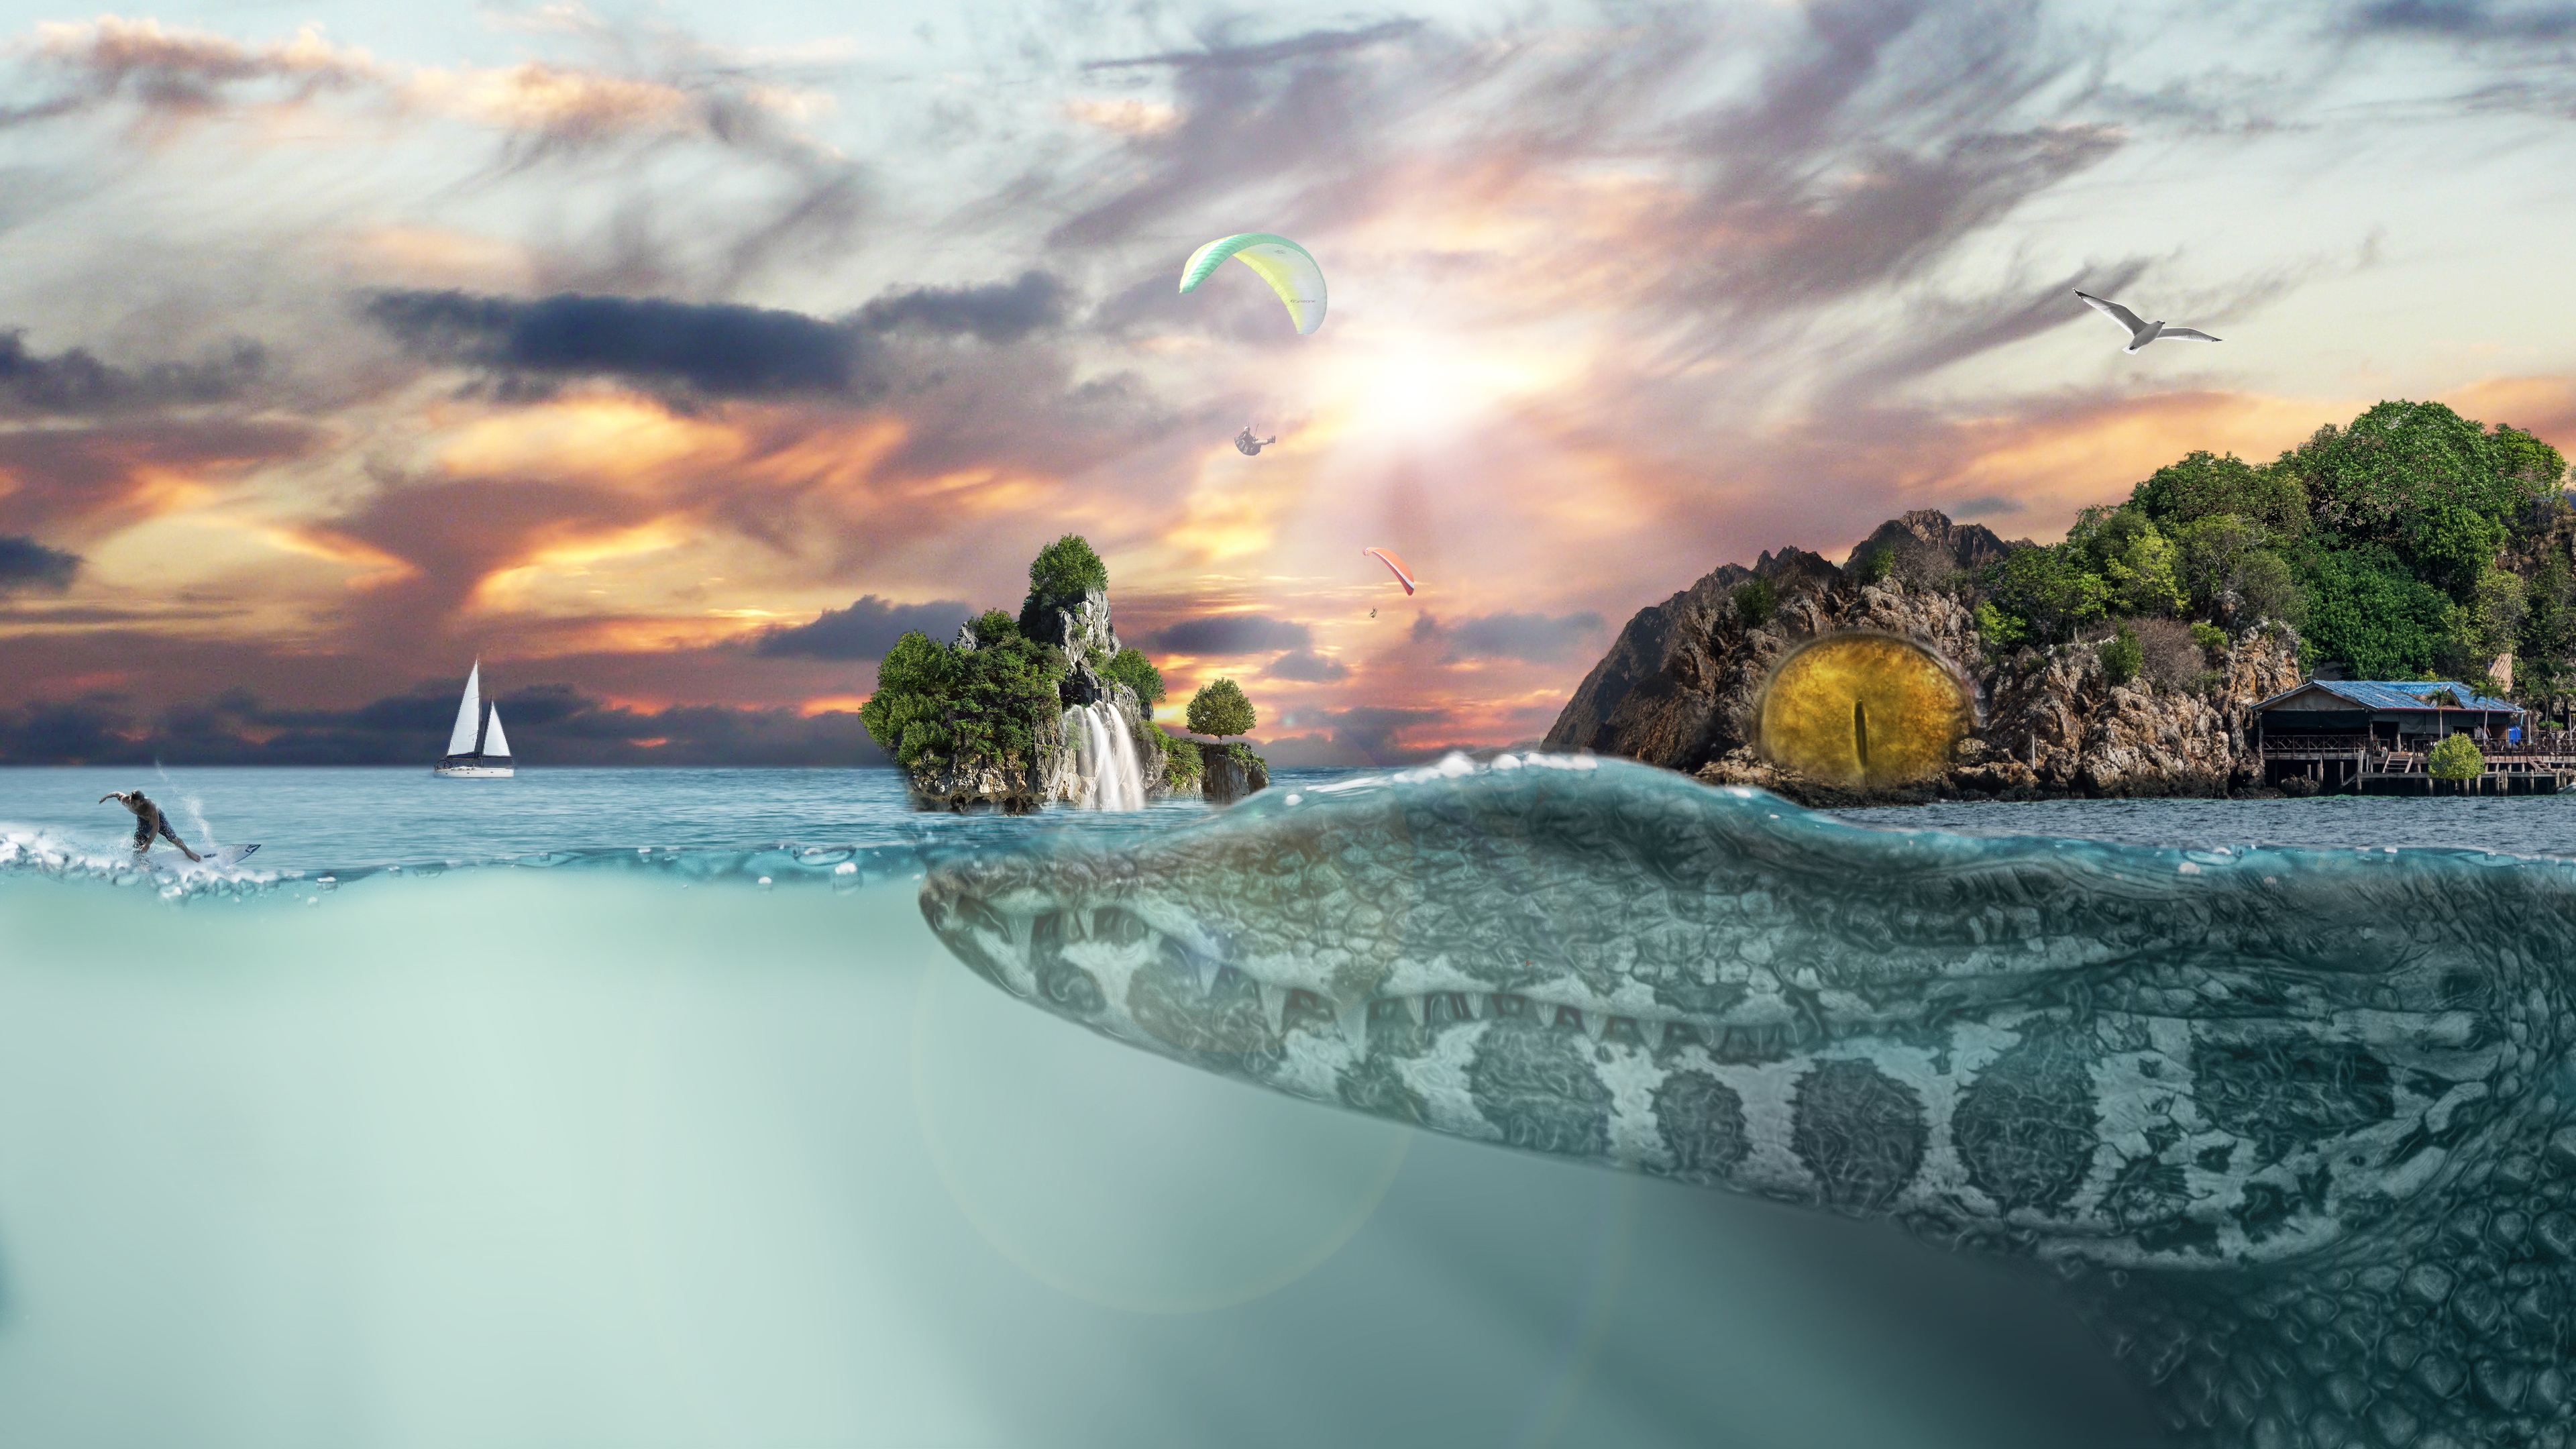 Бесплатное фото Футуристический пейзаж с островом на голове крокодила